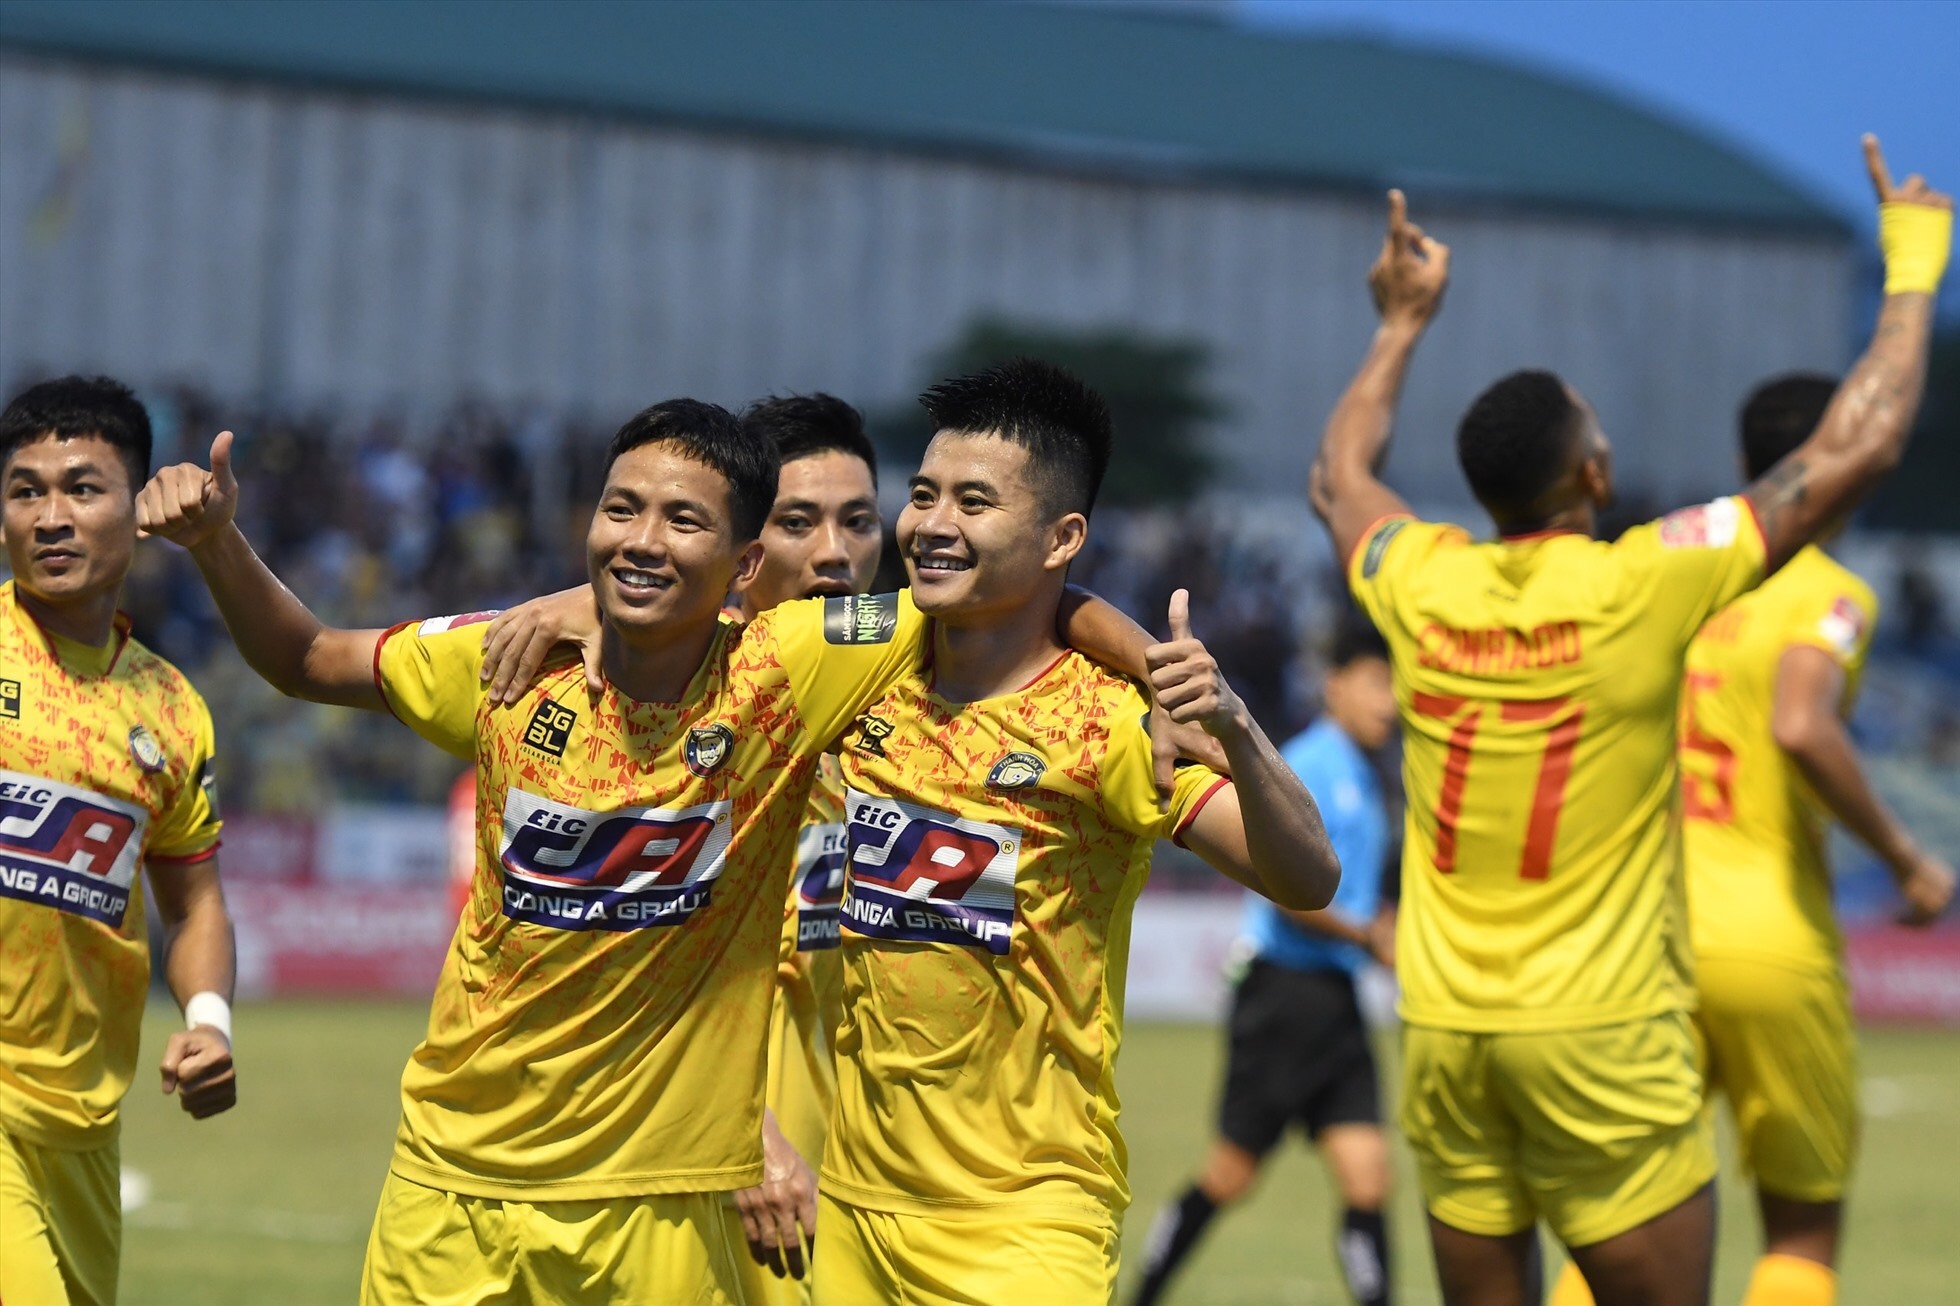 Câu lạc bộ Thanh Hoá vững vàng ở vị trí đầu bảng sau 9 vòng đấu. Ảnh: Lan Hương